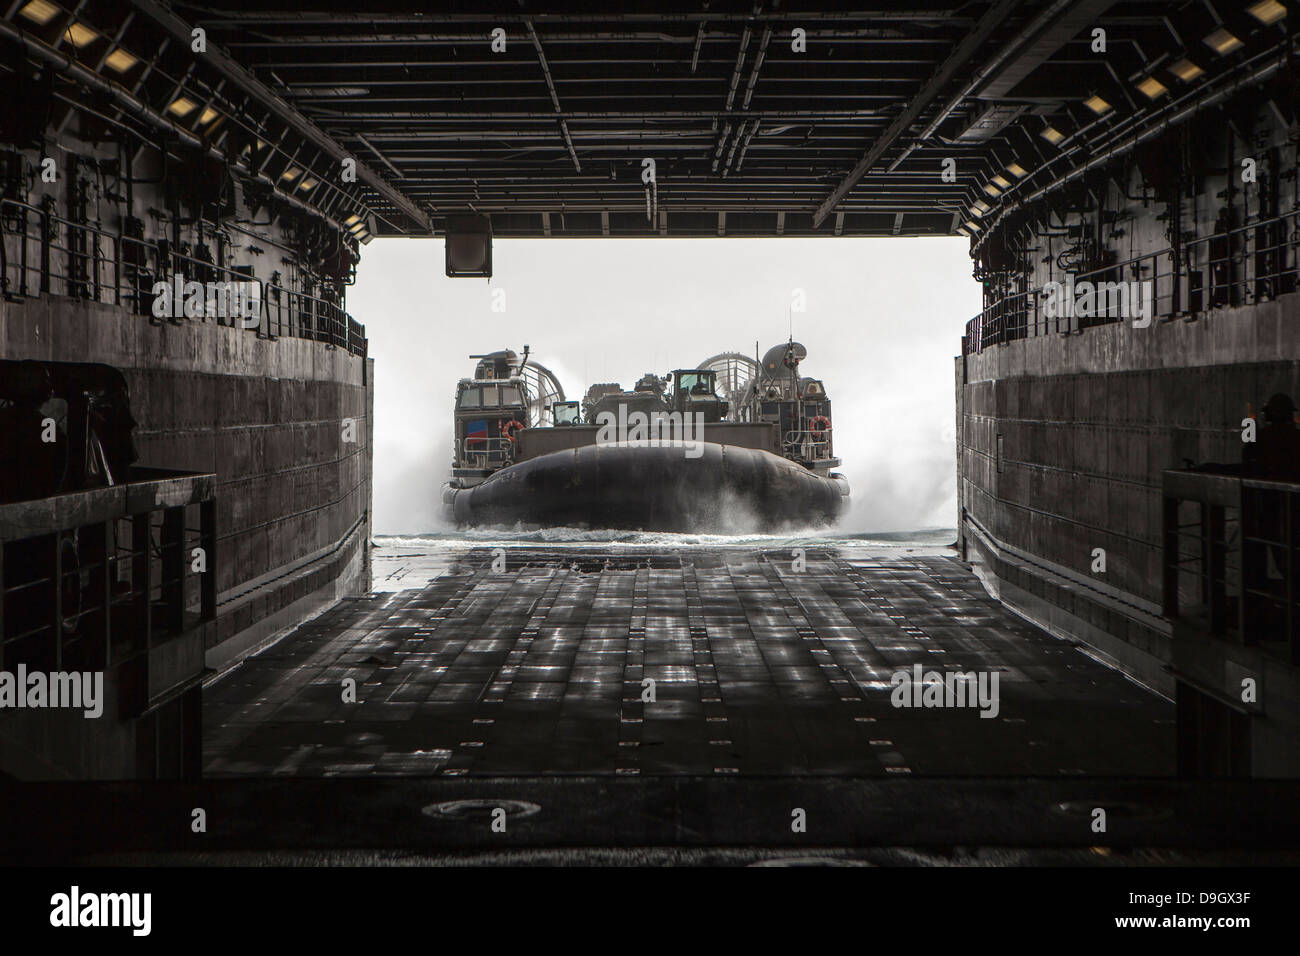 9 marzo 2013 - STATI UNITI Navy Landing Craft Air Cushion entra il bene del ponte della USS Green Bay (LPD 20) nel Mare Arabico. Foto Stock